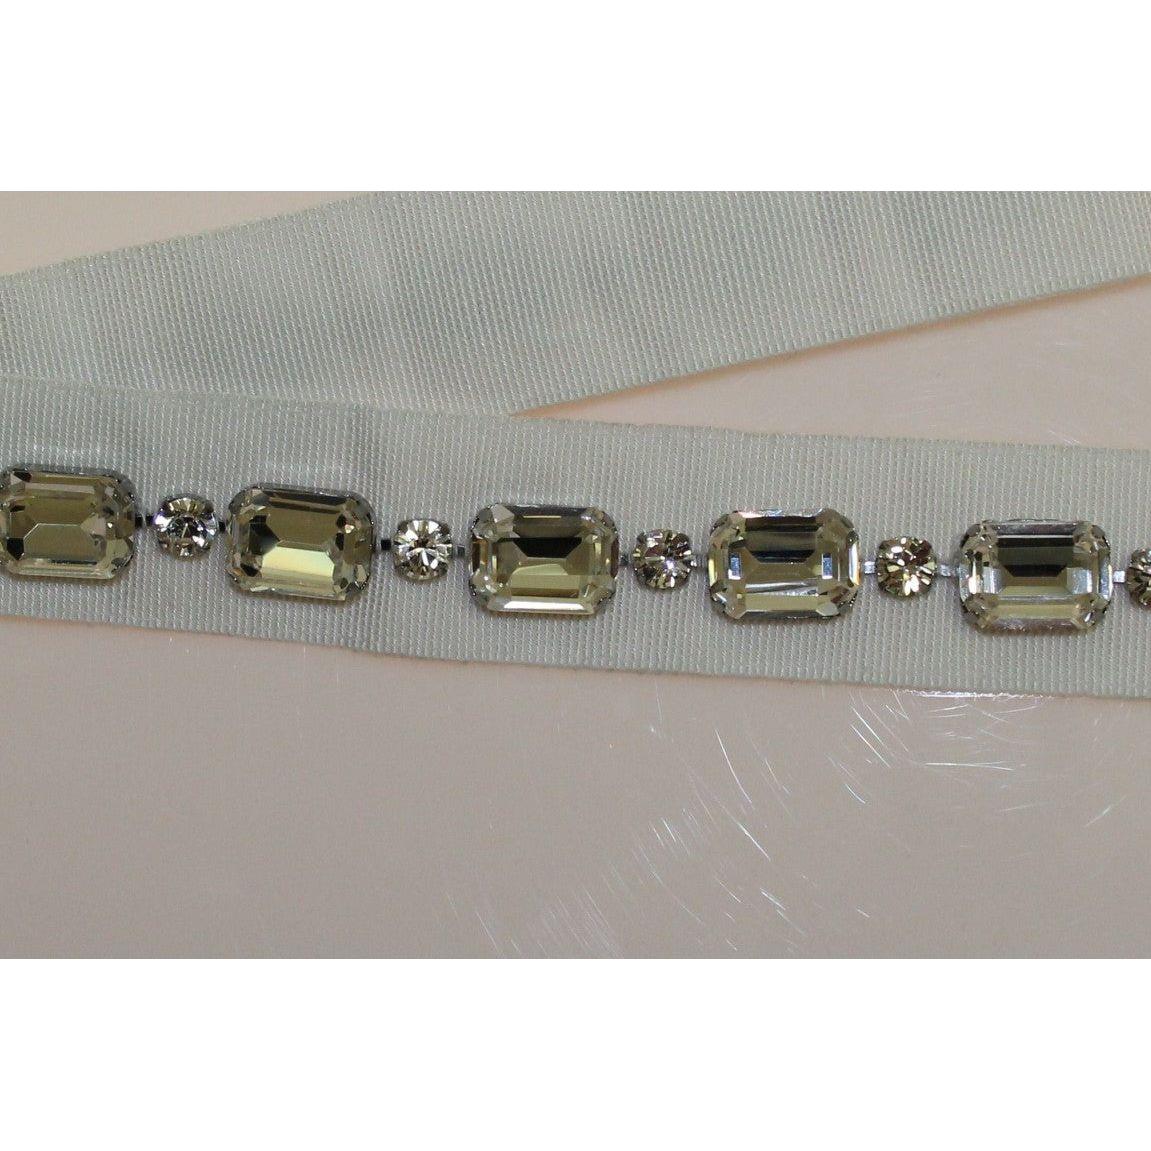 Dolce & Gabbana Elegant Crystal-Embellished Waist Belt white-crystal-stones-waist-belt Belt